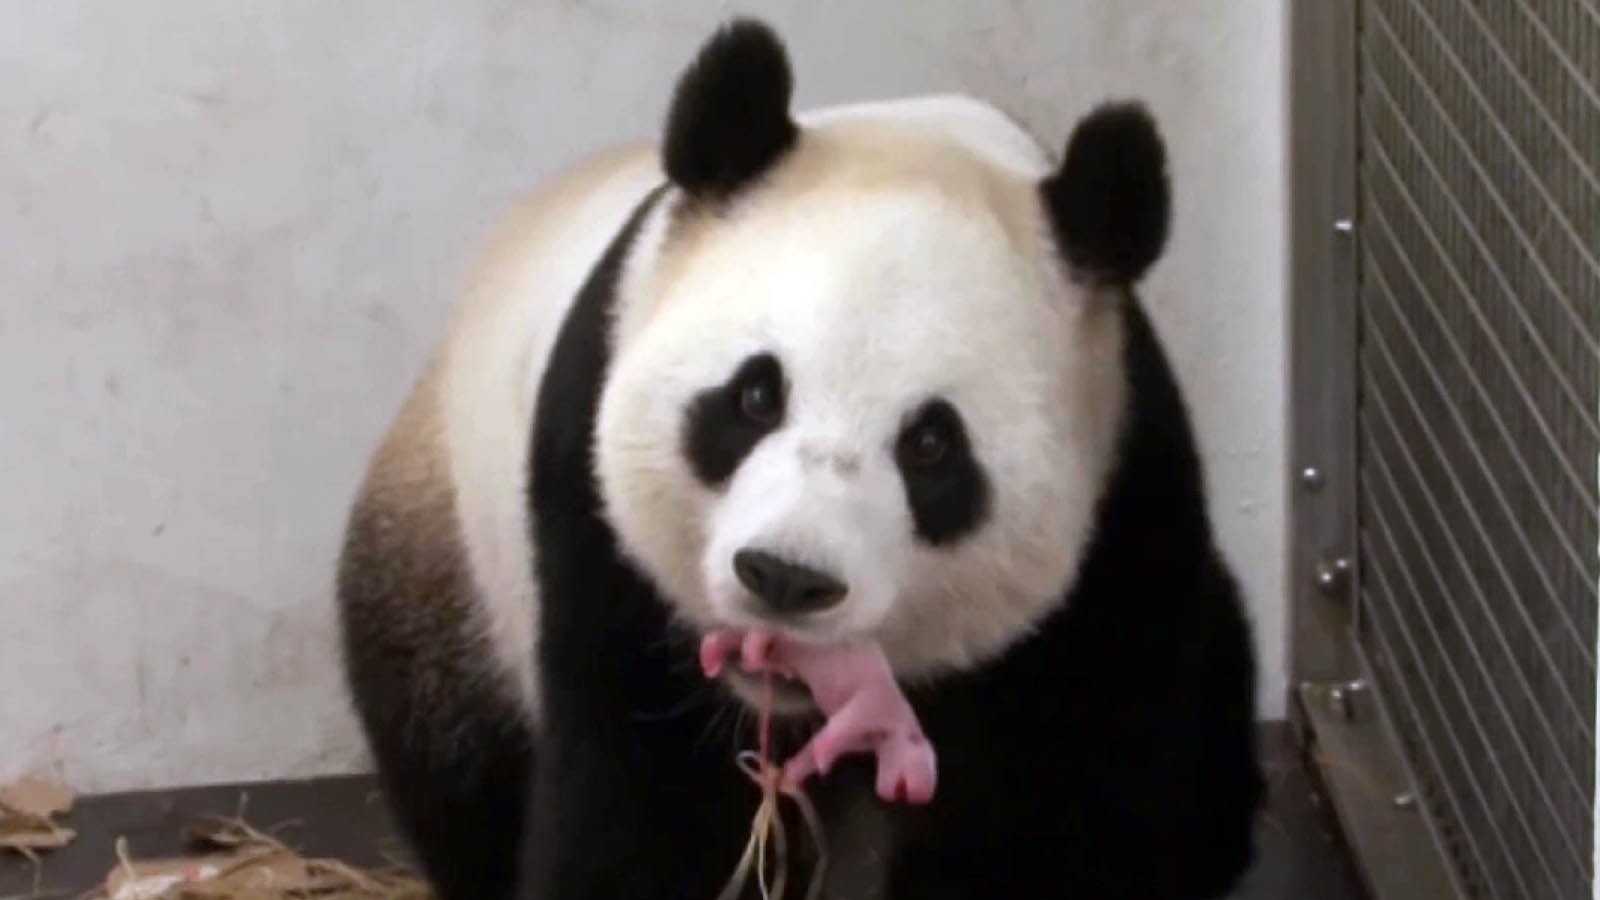 belgian-zoos-baby-panda-receives-new-name